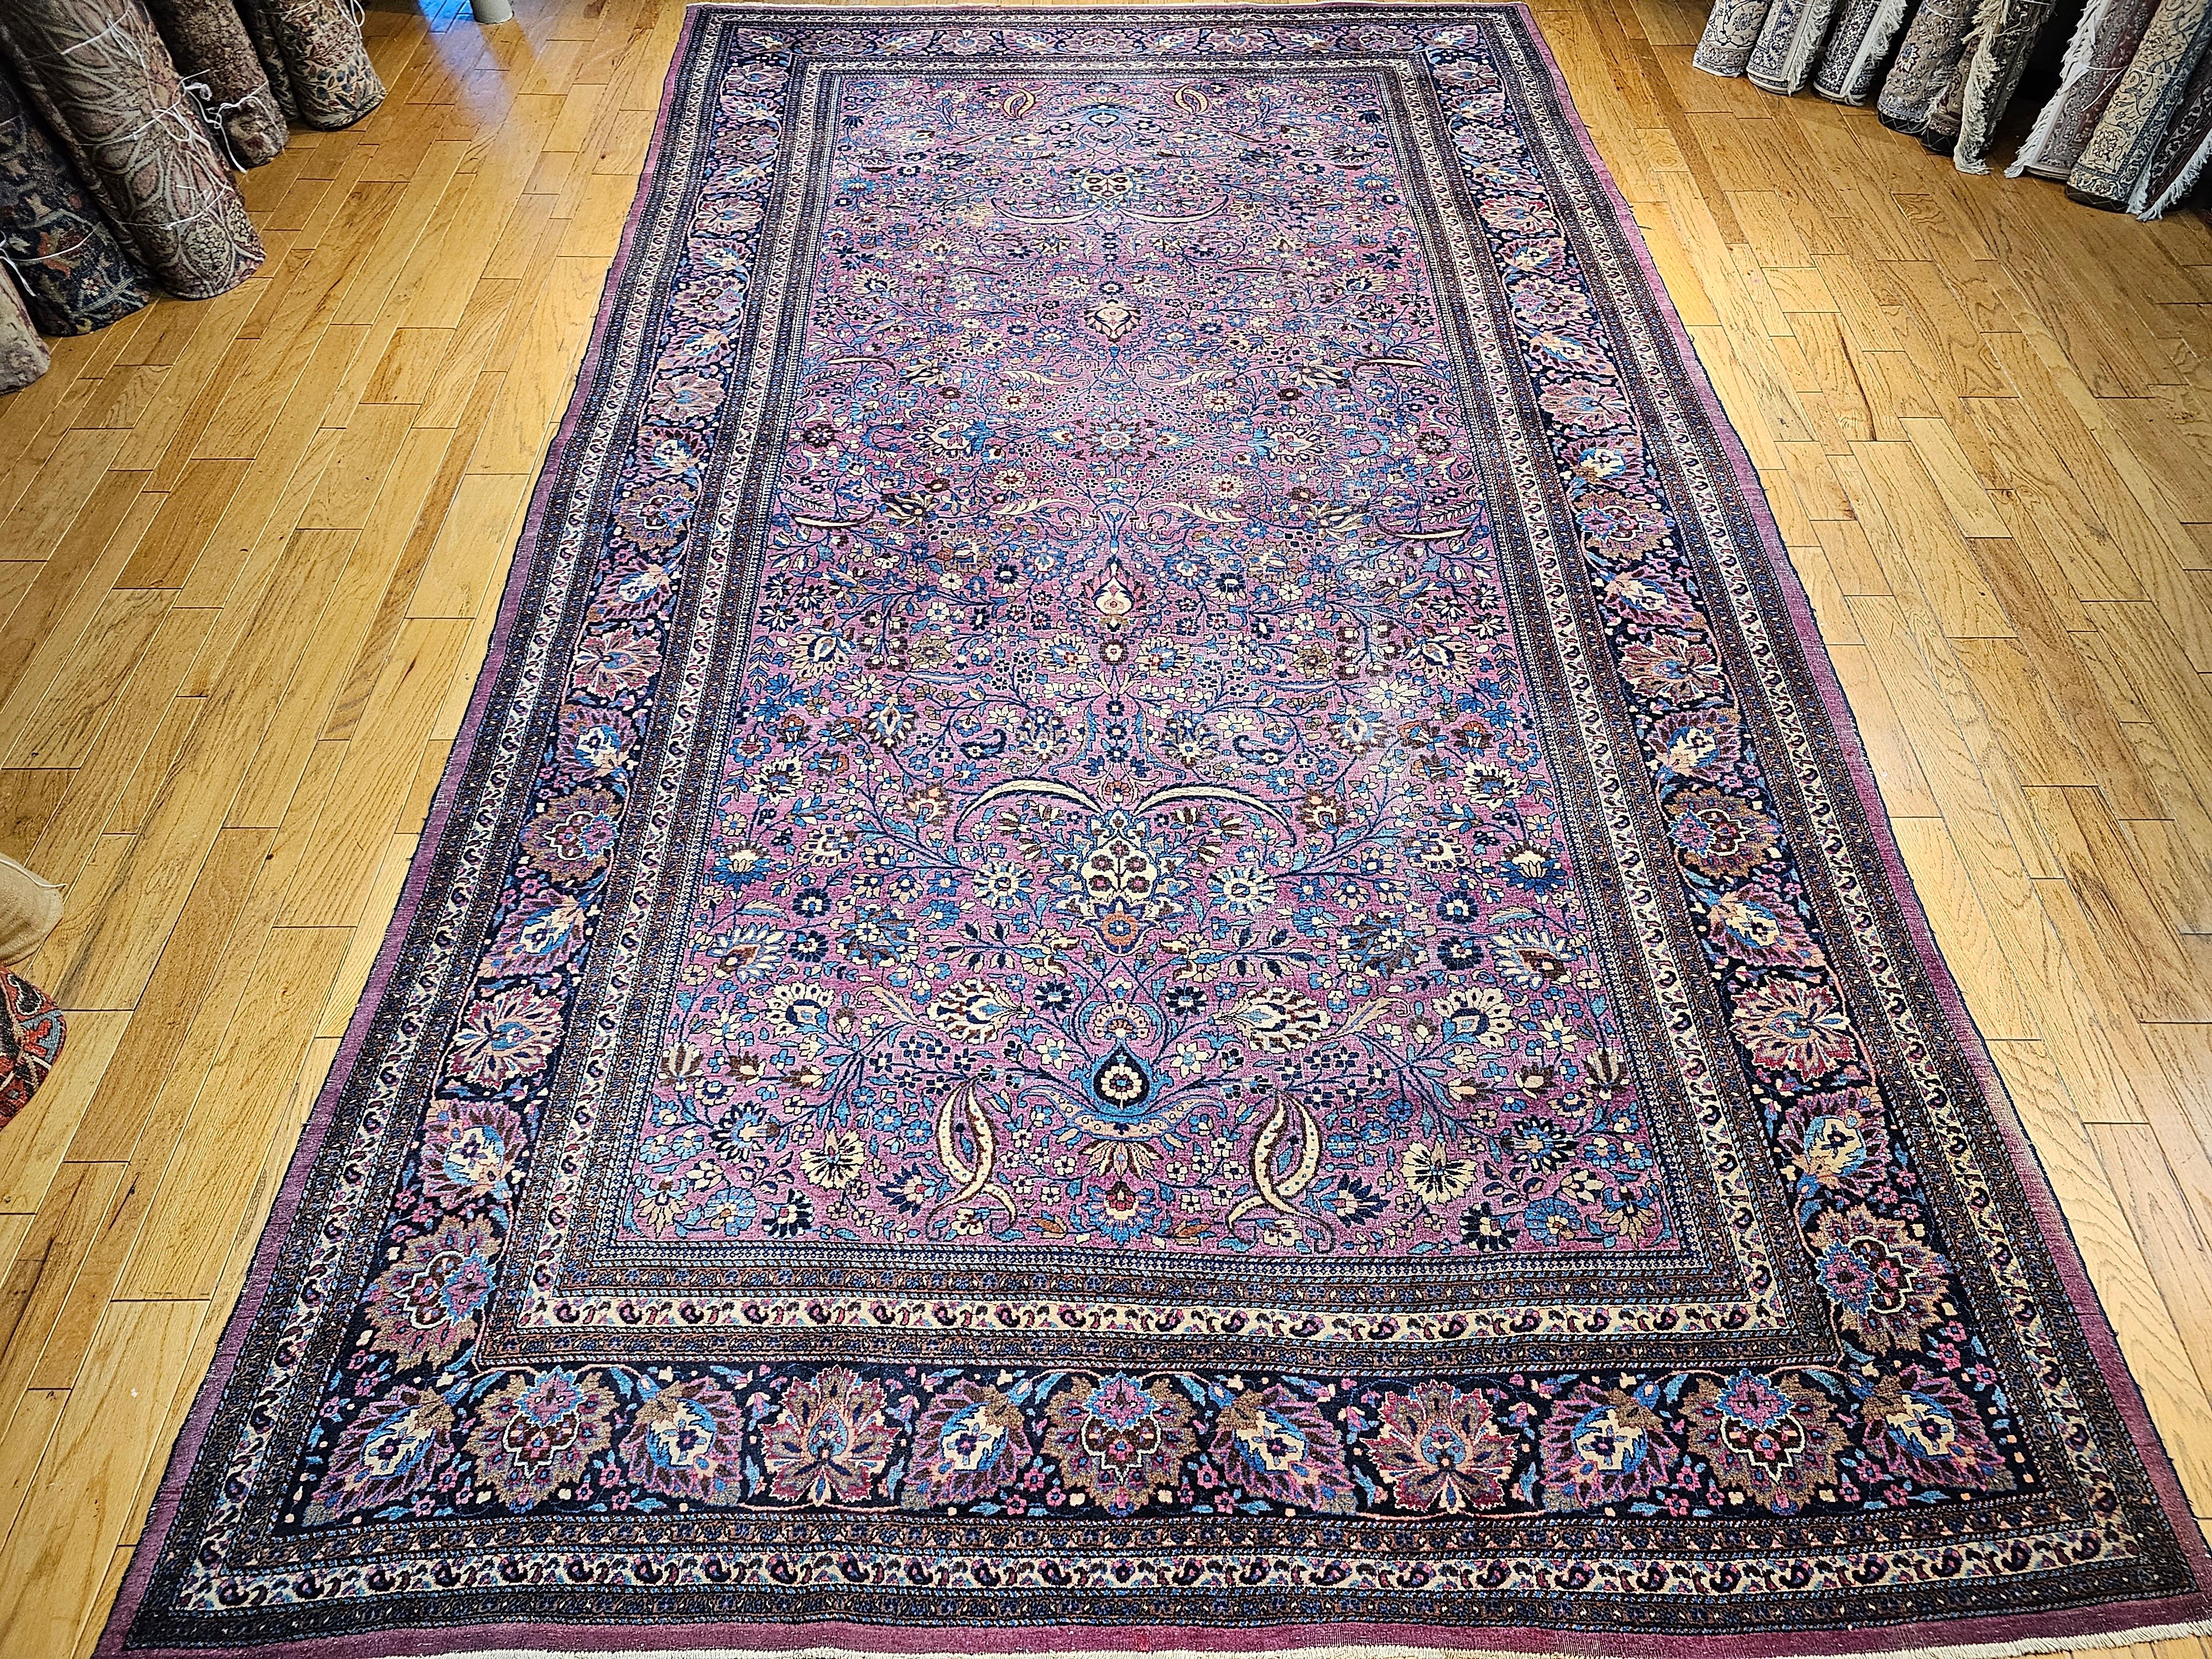 Ce magnifique tapis ancien persan Khorassan de couleur pourpre profond à motif allover est un chef-d'œuvre d'une splendeur à couper le souffle. Ce ton de violet profond ou d'aubergine est très rare et extrêmement attrayant et désirable.   Le riche